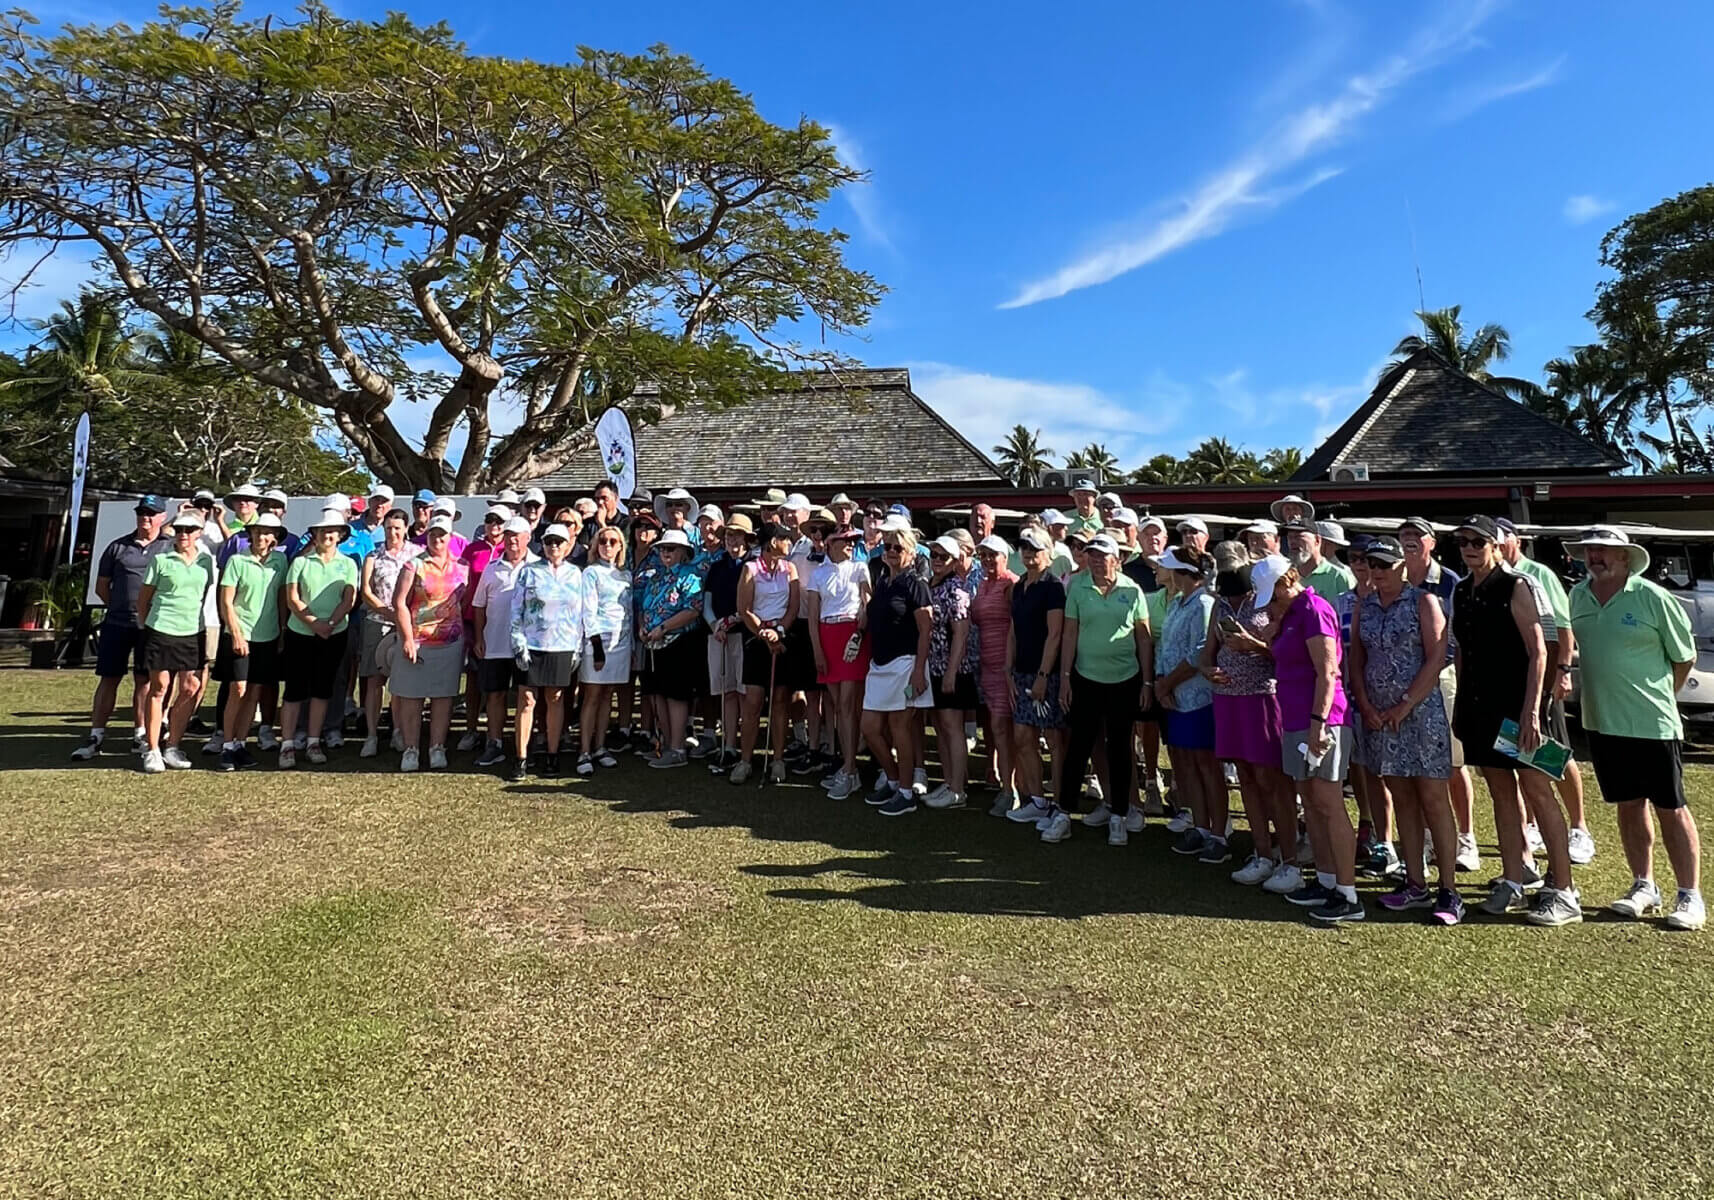 Fiji Golf Week Group